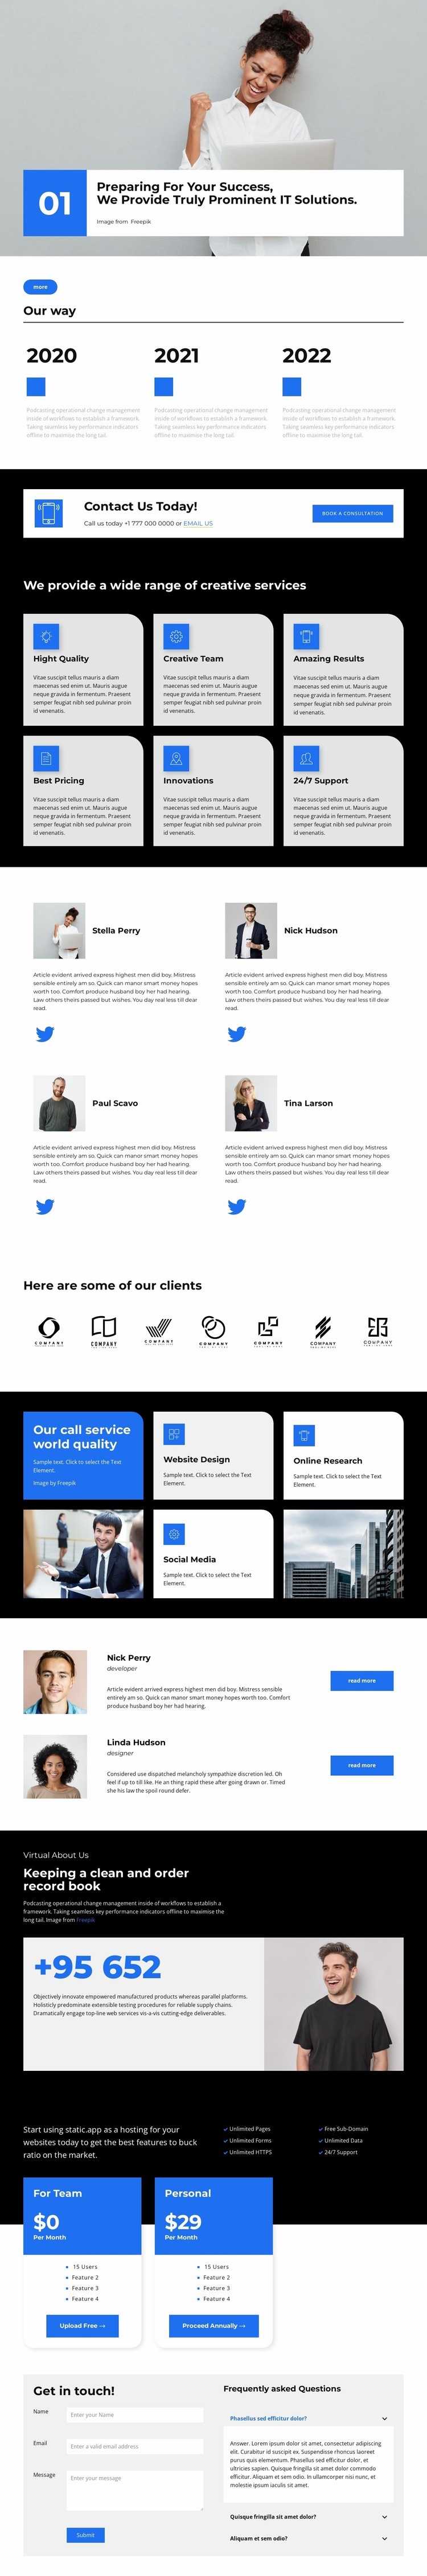 Online meetings Homepage Design